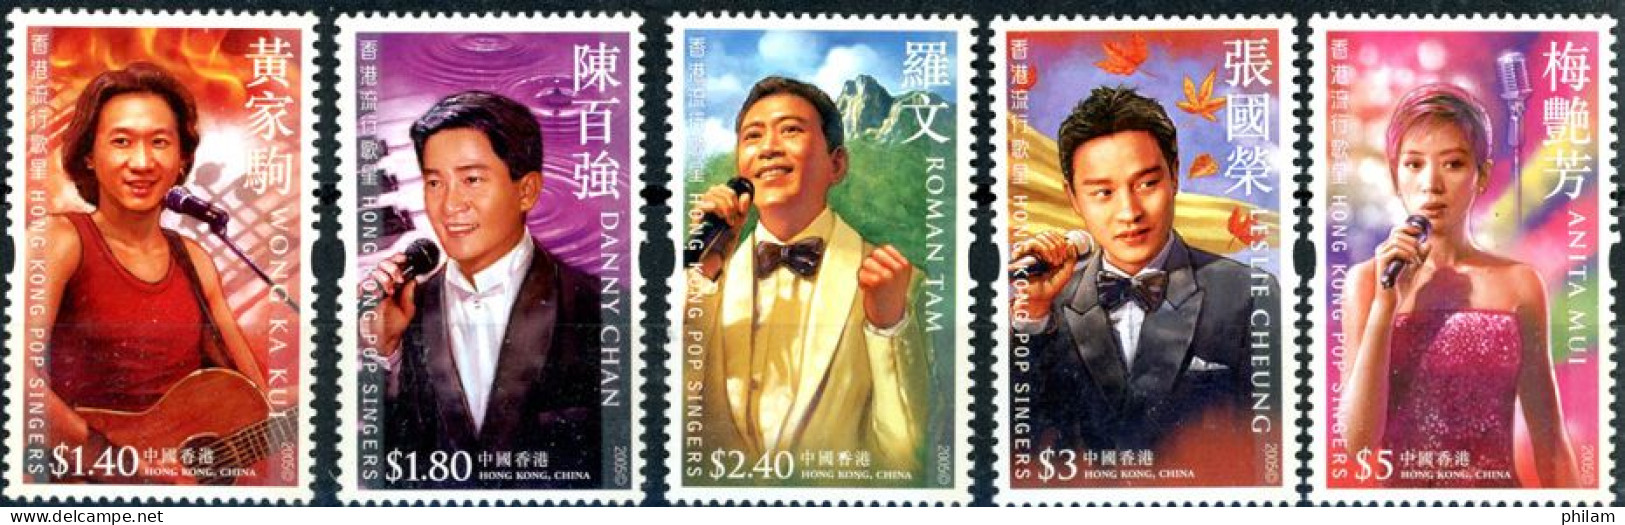 HONG KONG 2005 - Chanteurs Pop - 5 V. - Ungebraucht